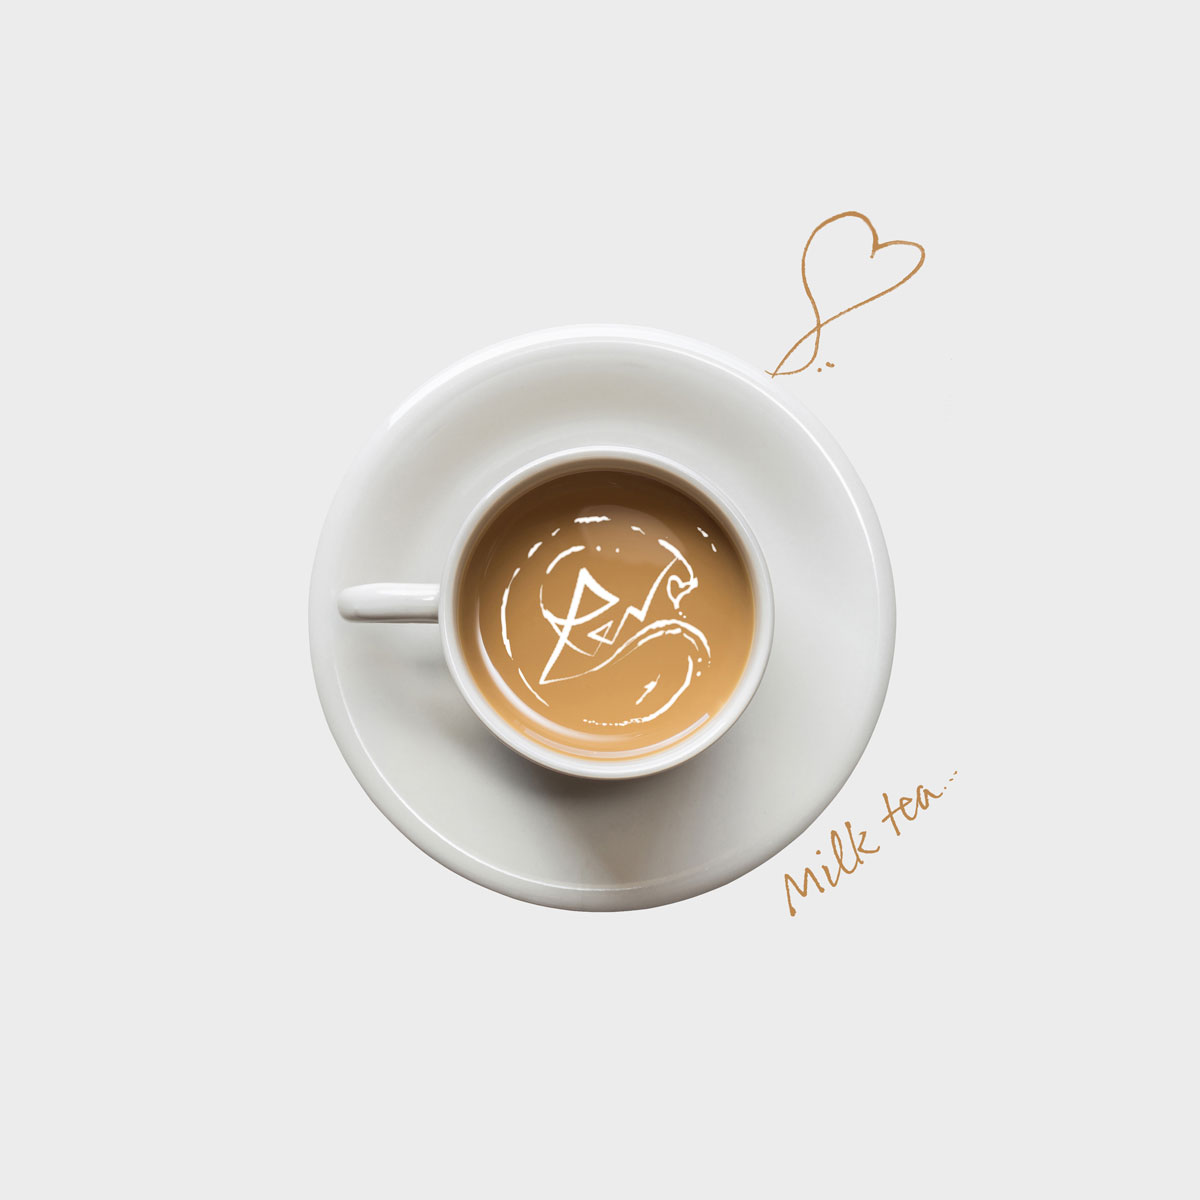 Cover art for『ReN - Milk tea』from the release『Milk tea